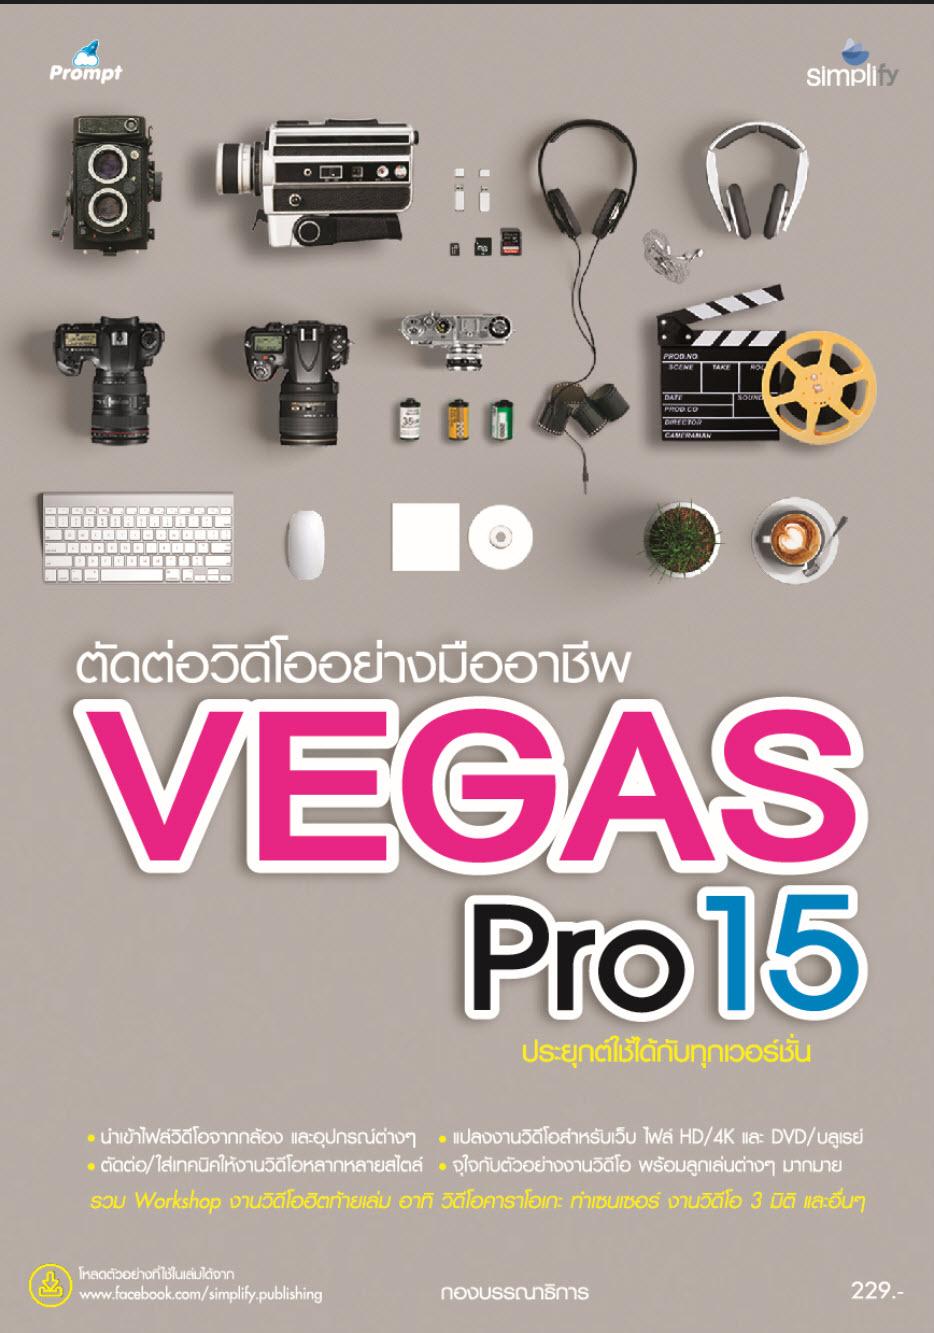 หนังสือสอน ตัดต่อวิดีโออย่างมืออาชีพด้วย Vegas Pro 15